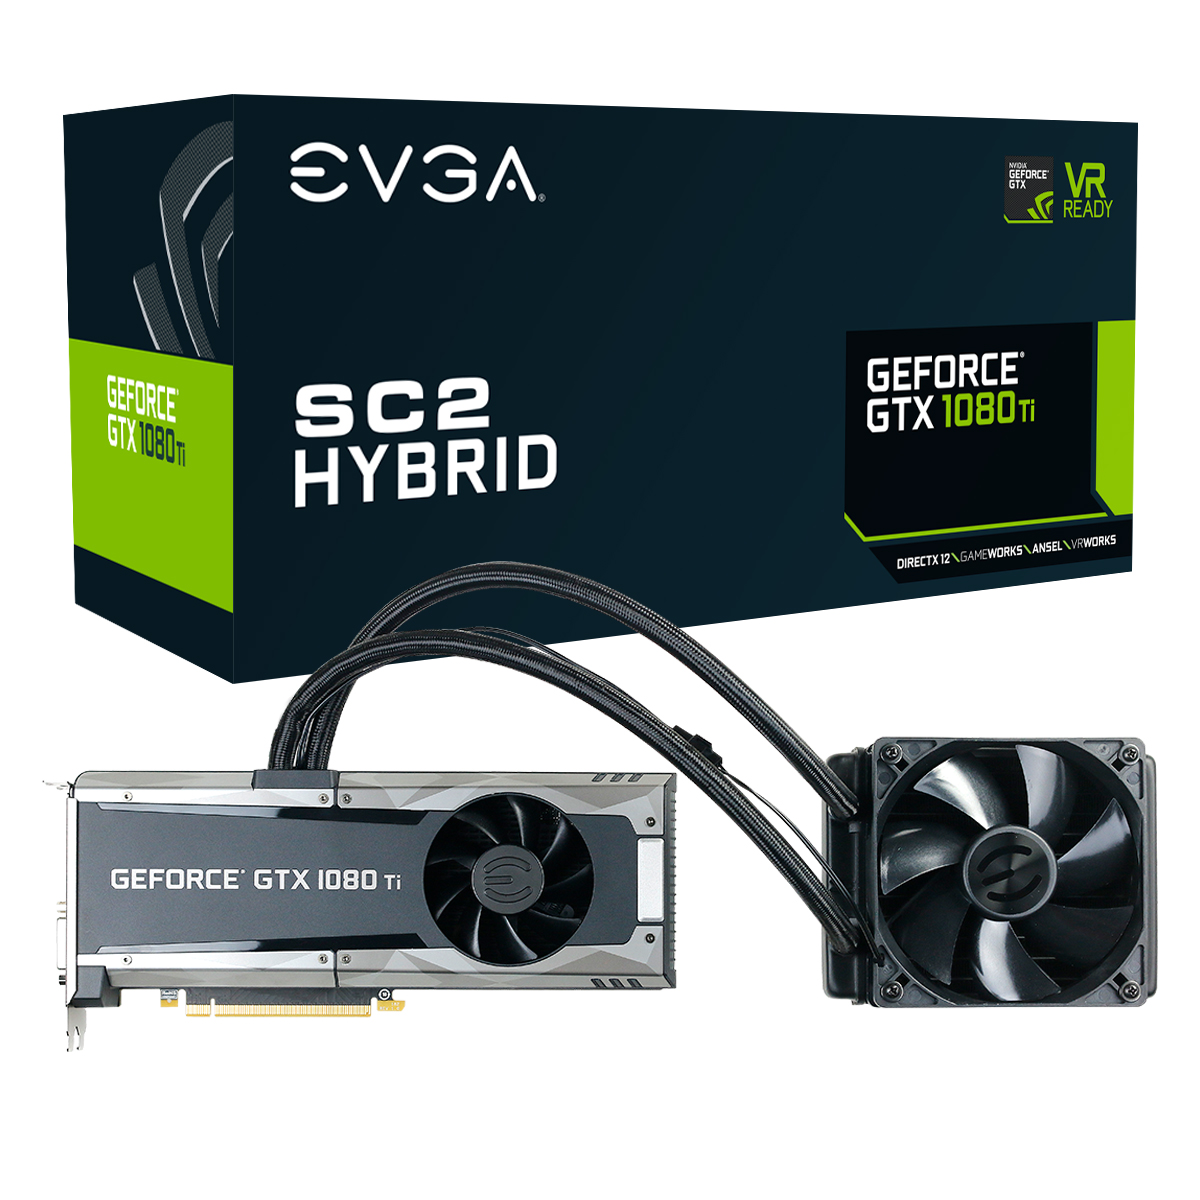 Immagine pubblicata in relazione al seguente contenuto: EVGA annuncia ufficialmente la video card GeForce GTX 1080 Ti SC2 HYBRID | Nome immagine: news26264_EVGA-GeForce-GTX-1080-Ti-SC2-HYBRID_7.jpg